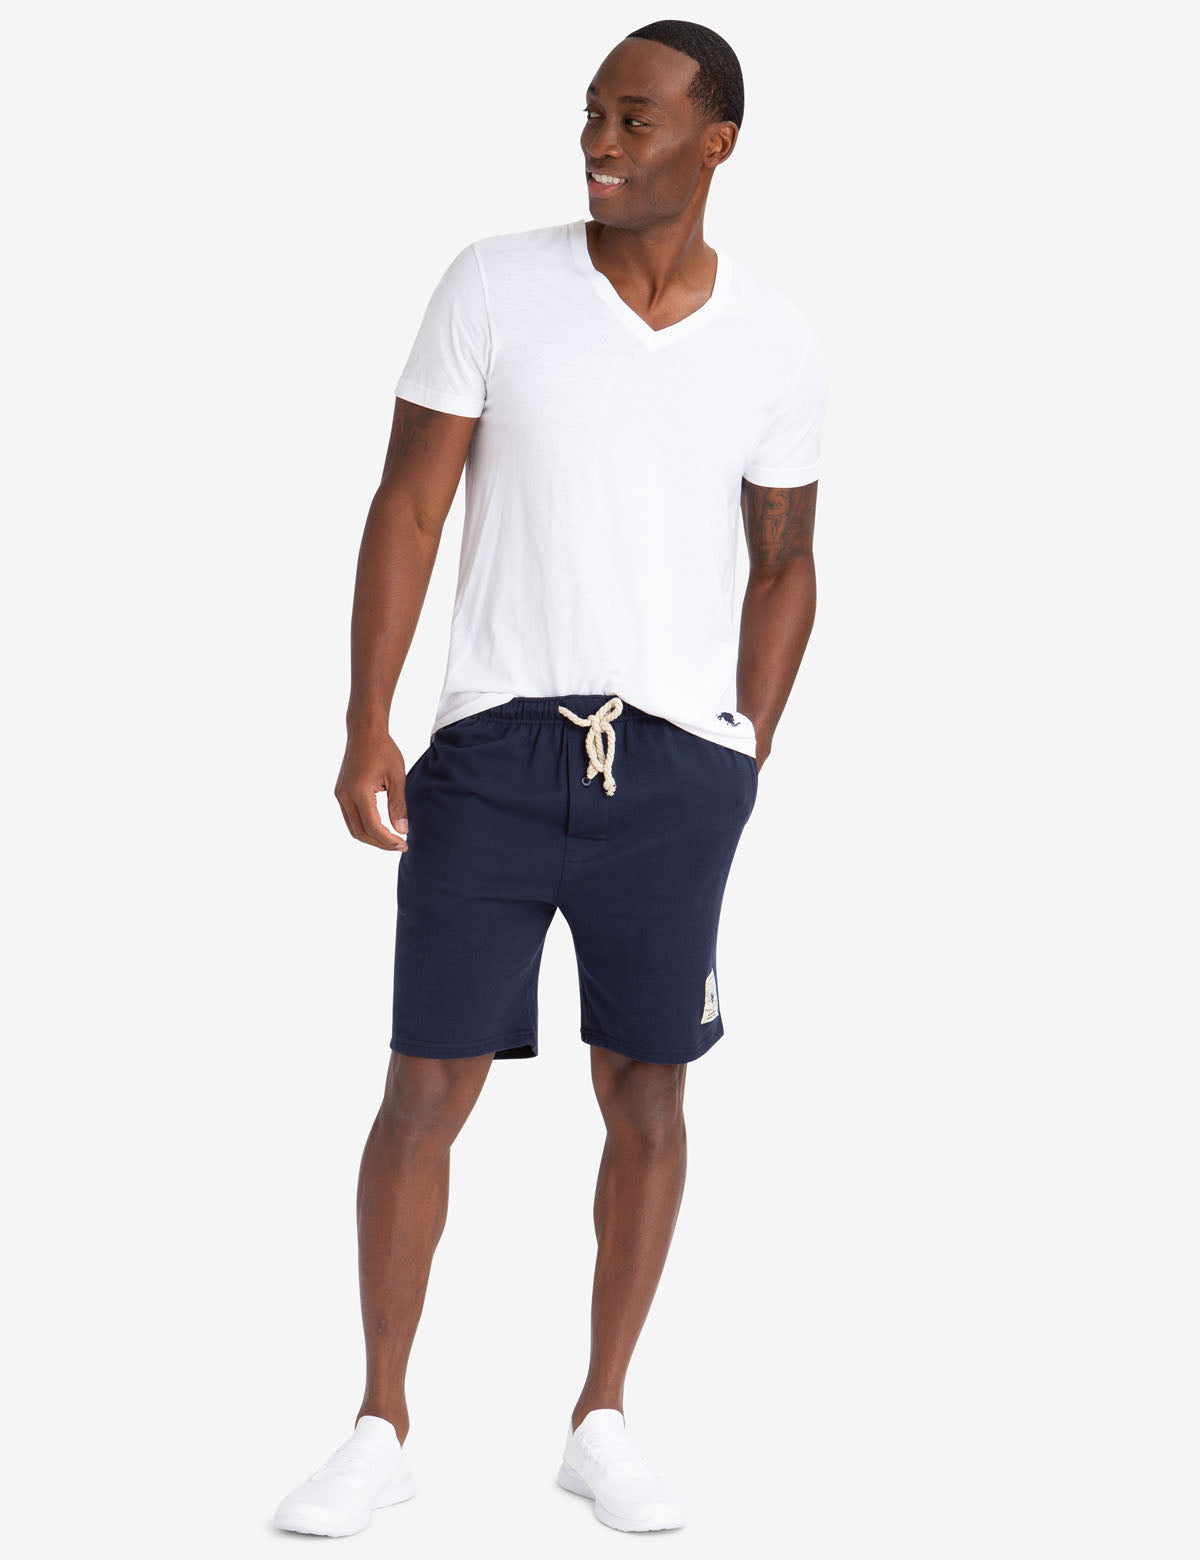 polo terry shorts